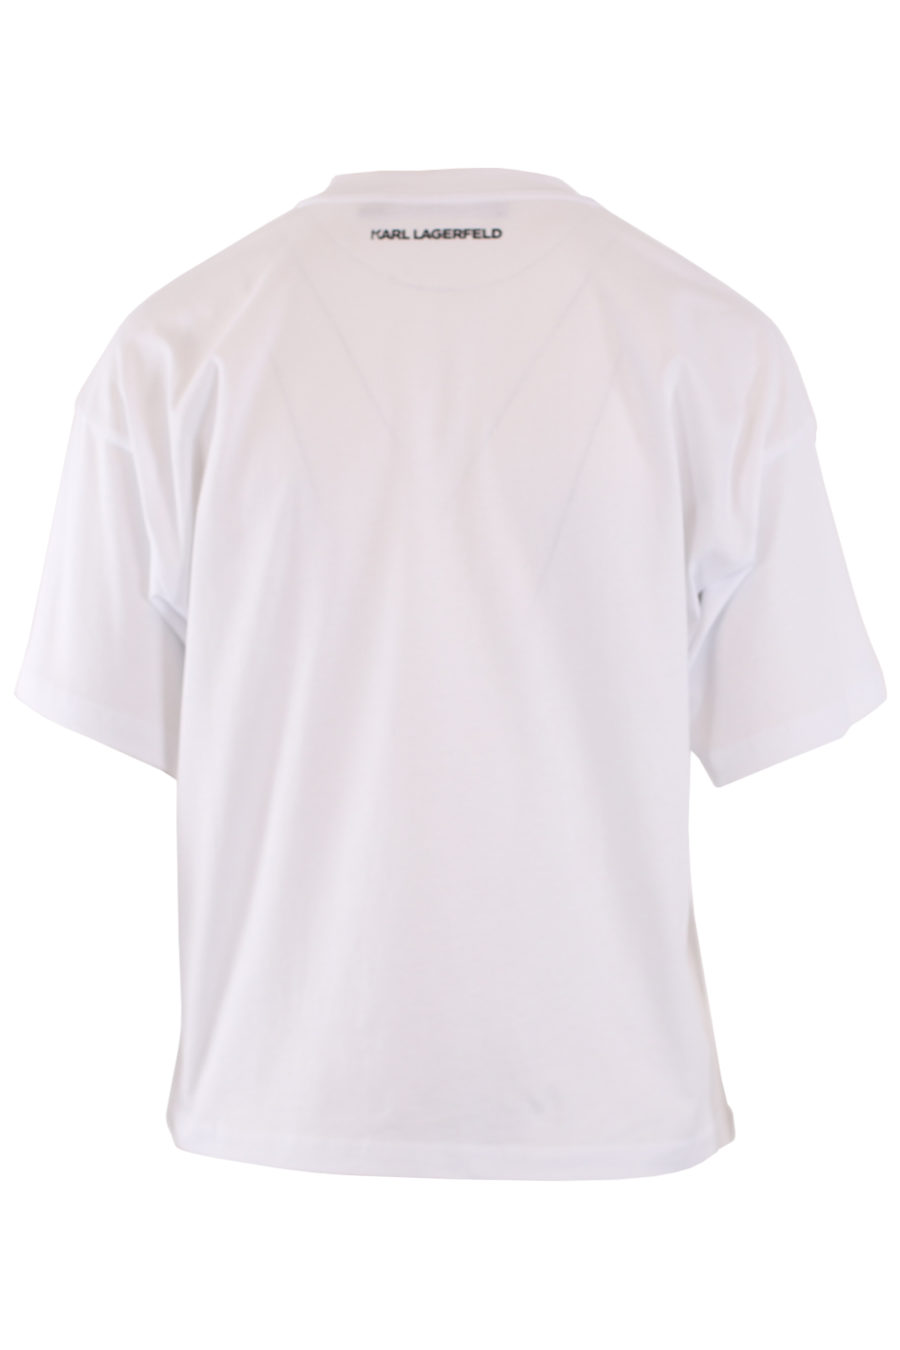 Weißes T-Shirt mit Samtlogo - IMG 8969